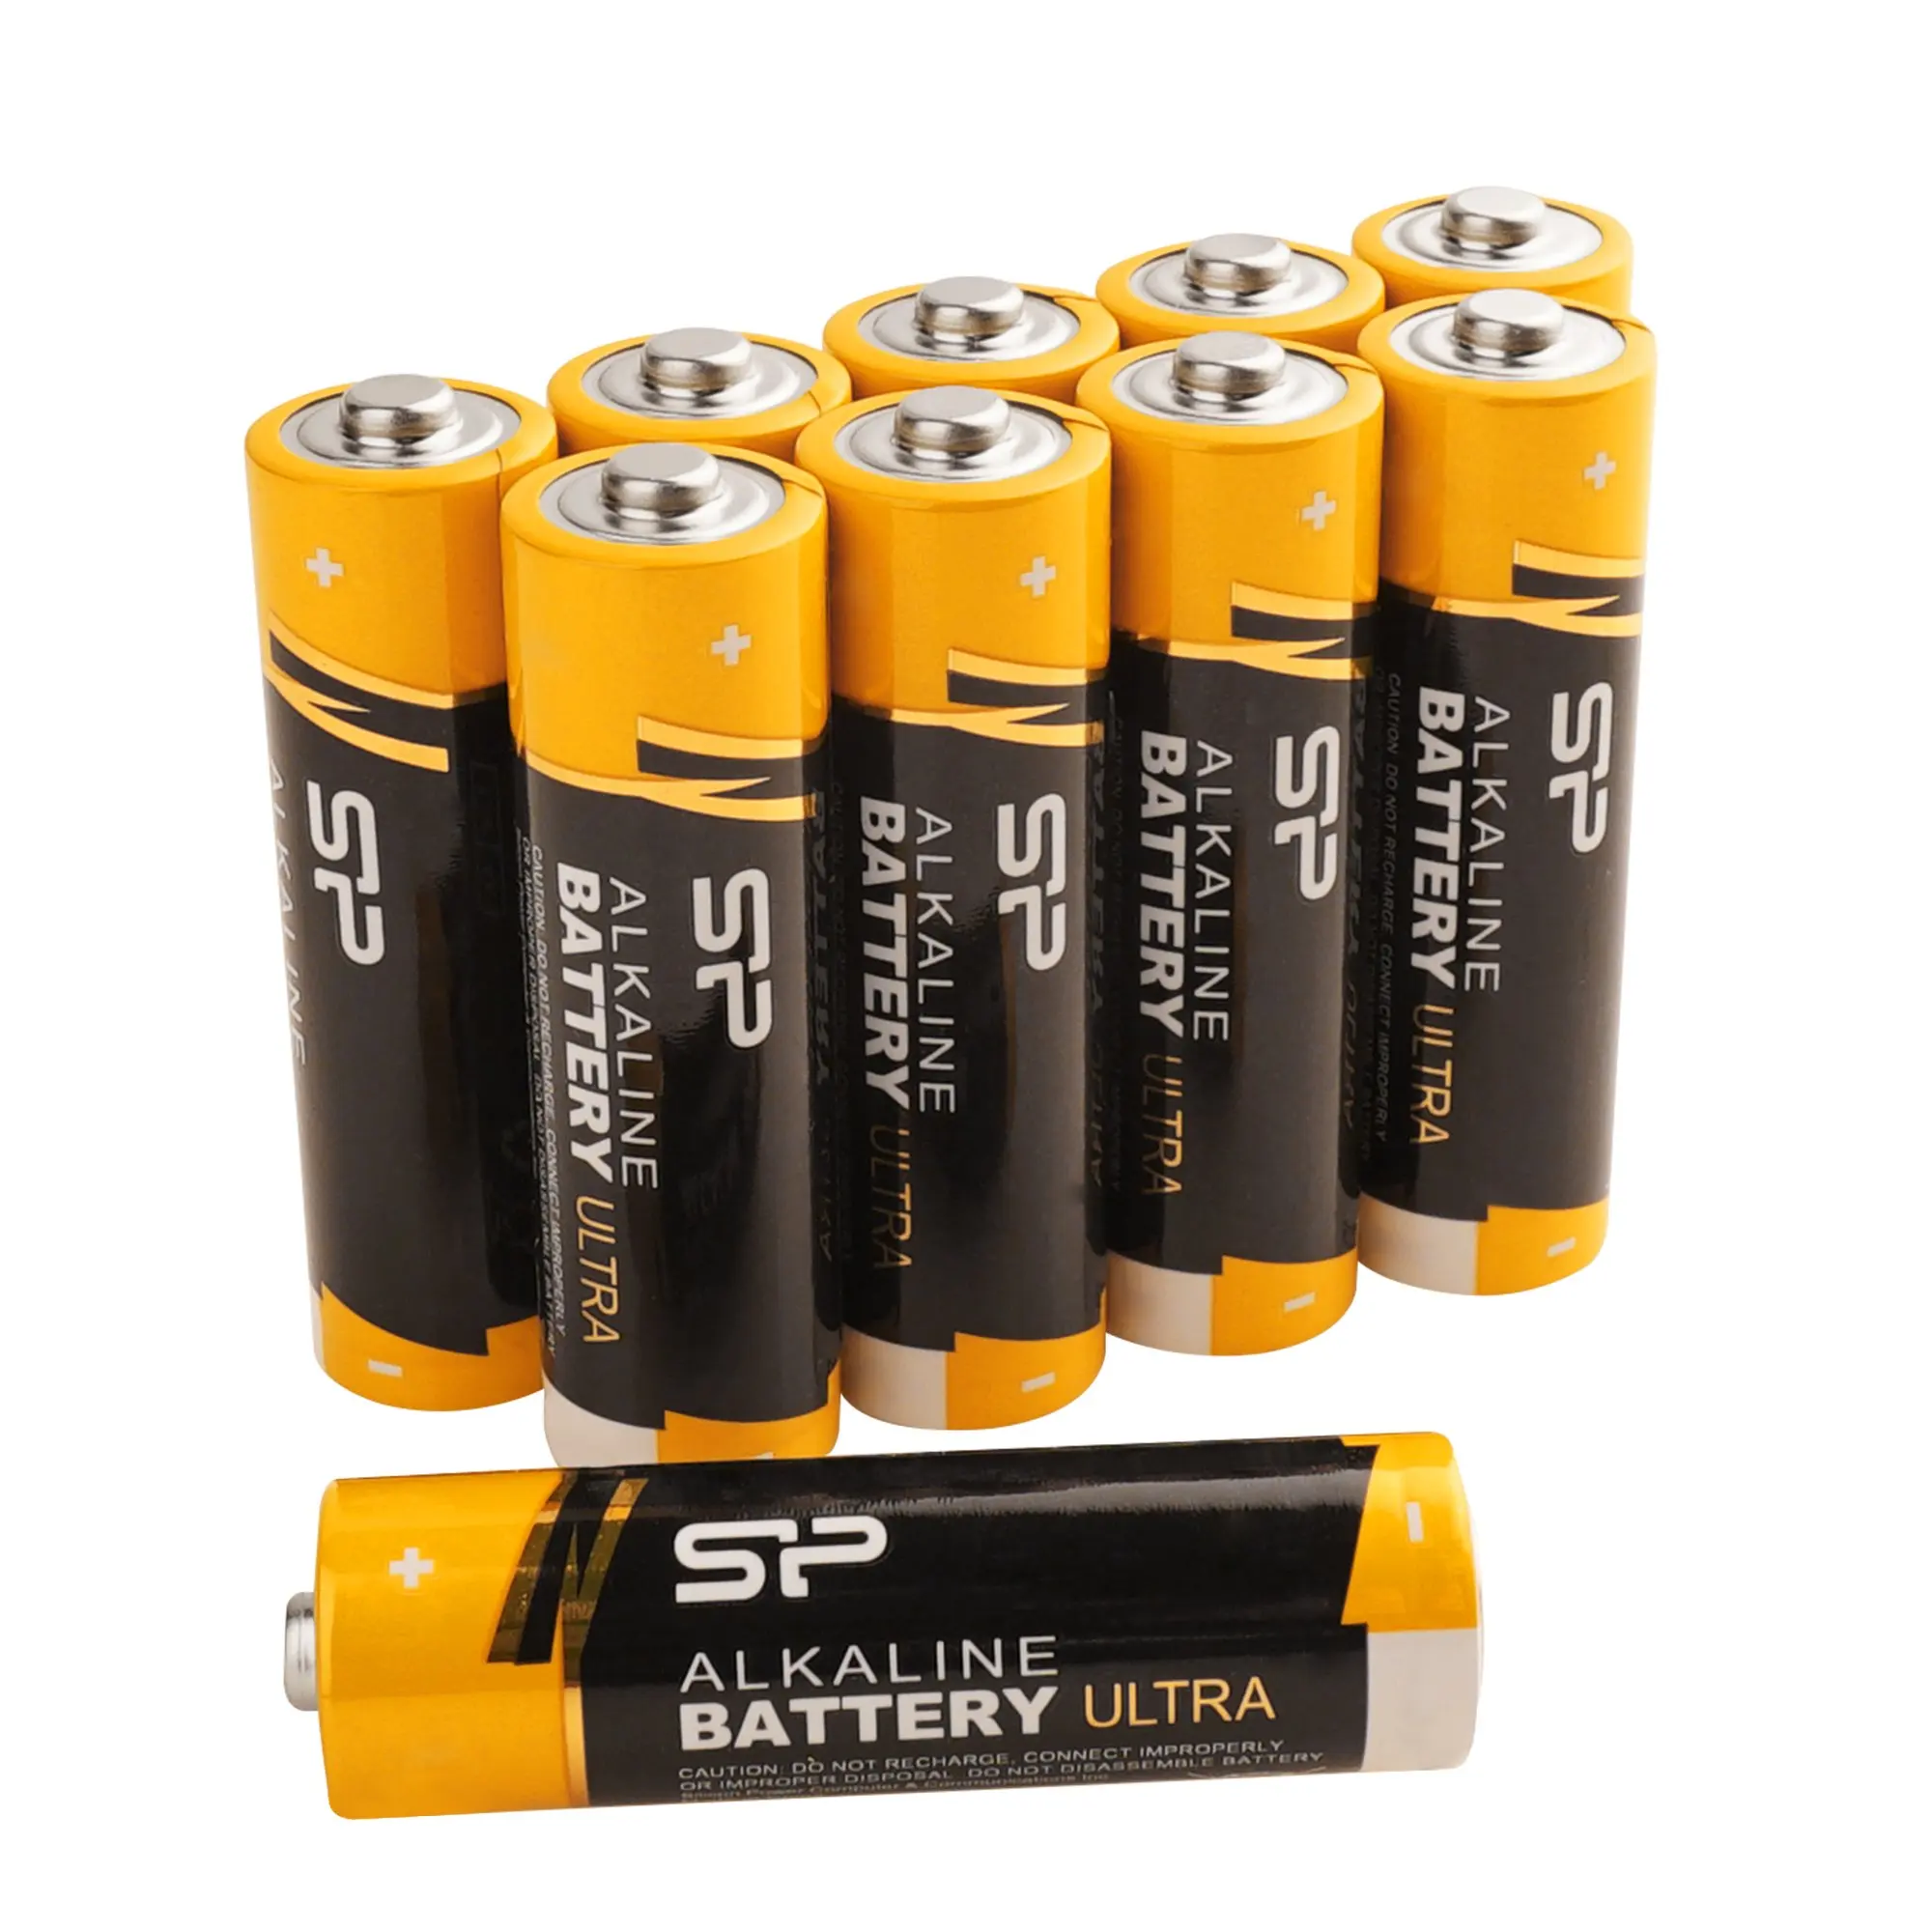 K battery. Ultra Alkaline Battery 112031. AA Alkaline Batteries. Ultra Alkaline Battery. Батарейки АА Power.